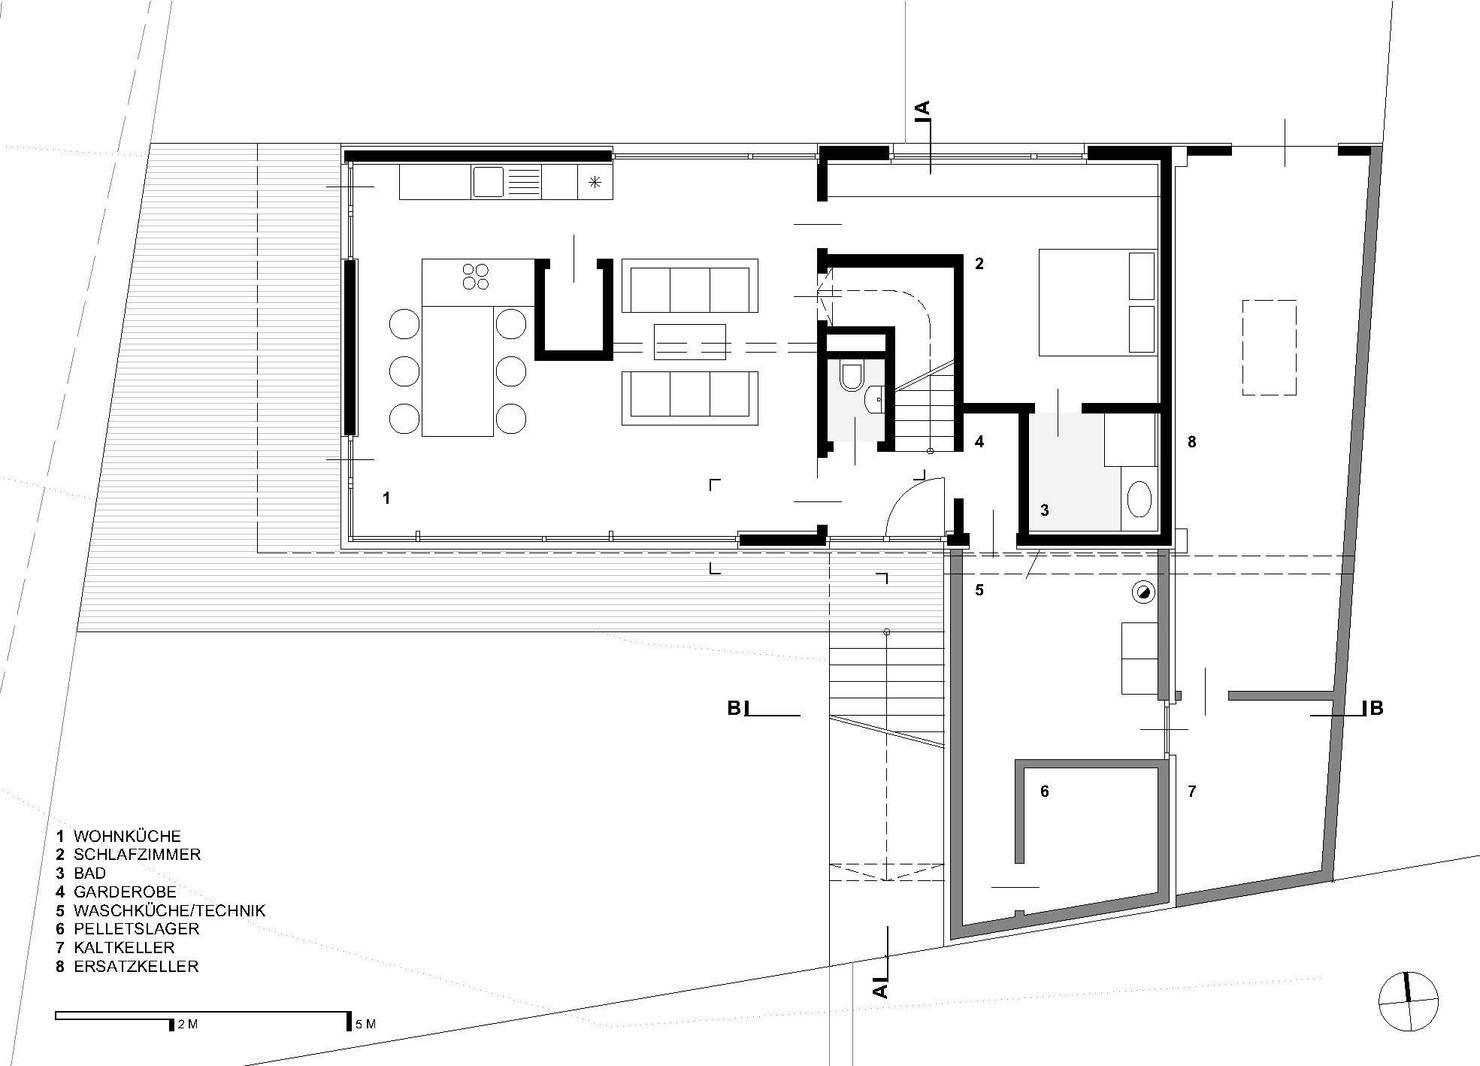 Дом мечты в скандинавском стиле за 7 млн, с планировкой- фотографии
				